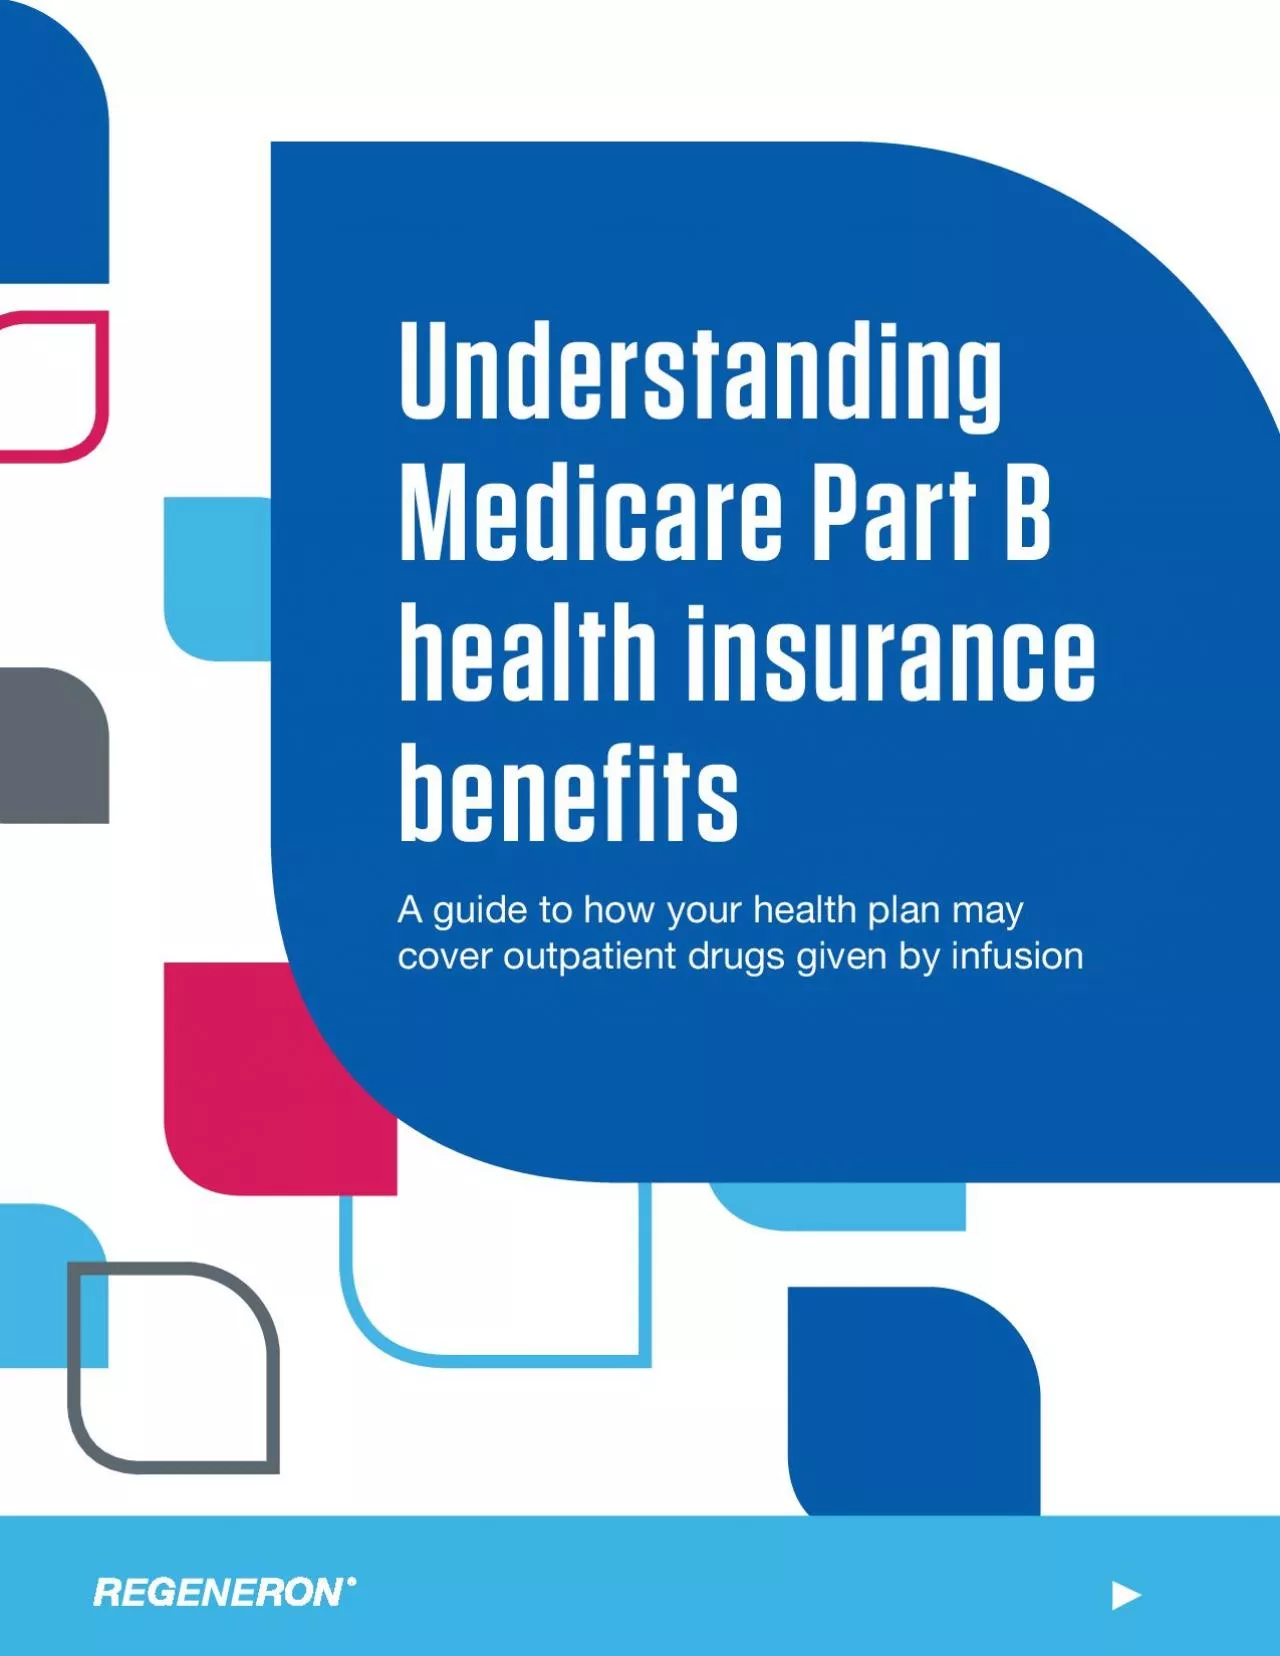 UnderstandingMedicare Part B health insurance benefits